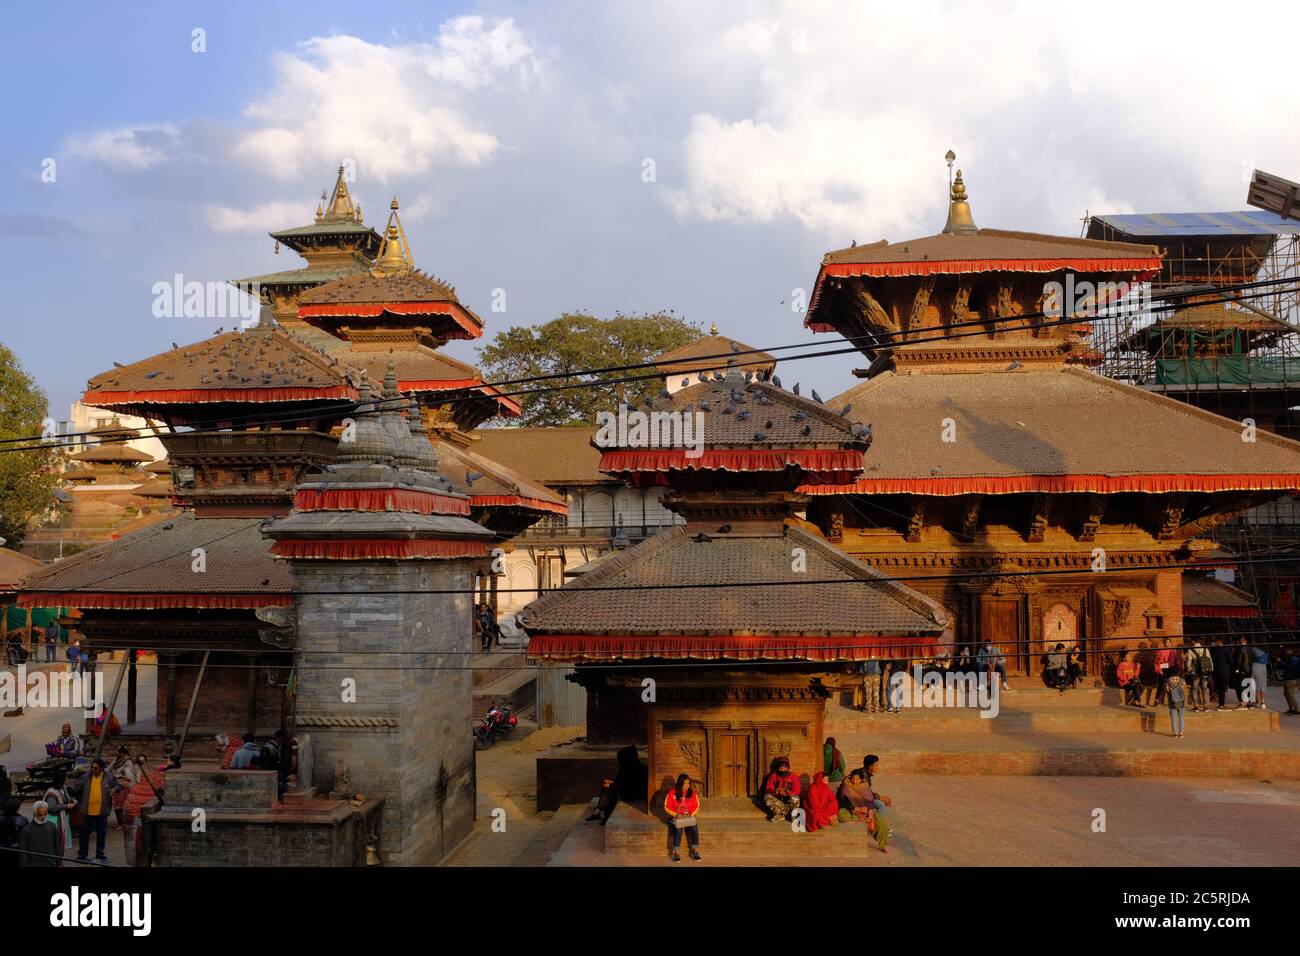 Temples historiques du complexe Hanuman Dhoka Durbar à l'intérieur de la place Kathmandu Durbar, au Népal Banque D'Images